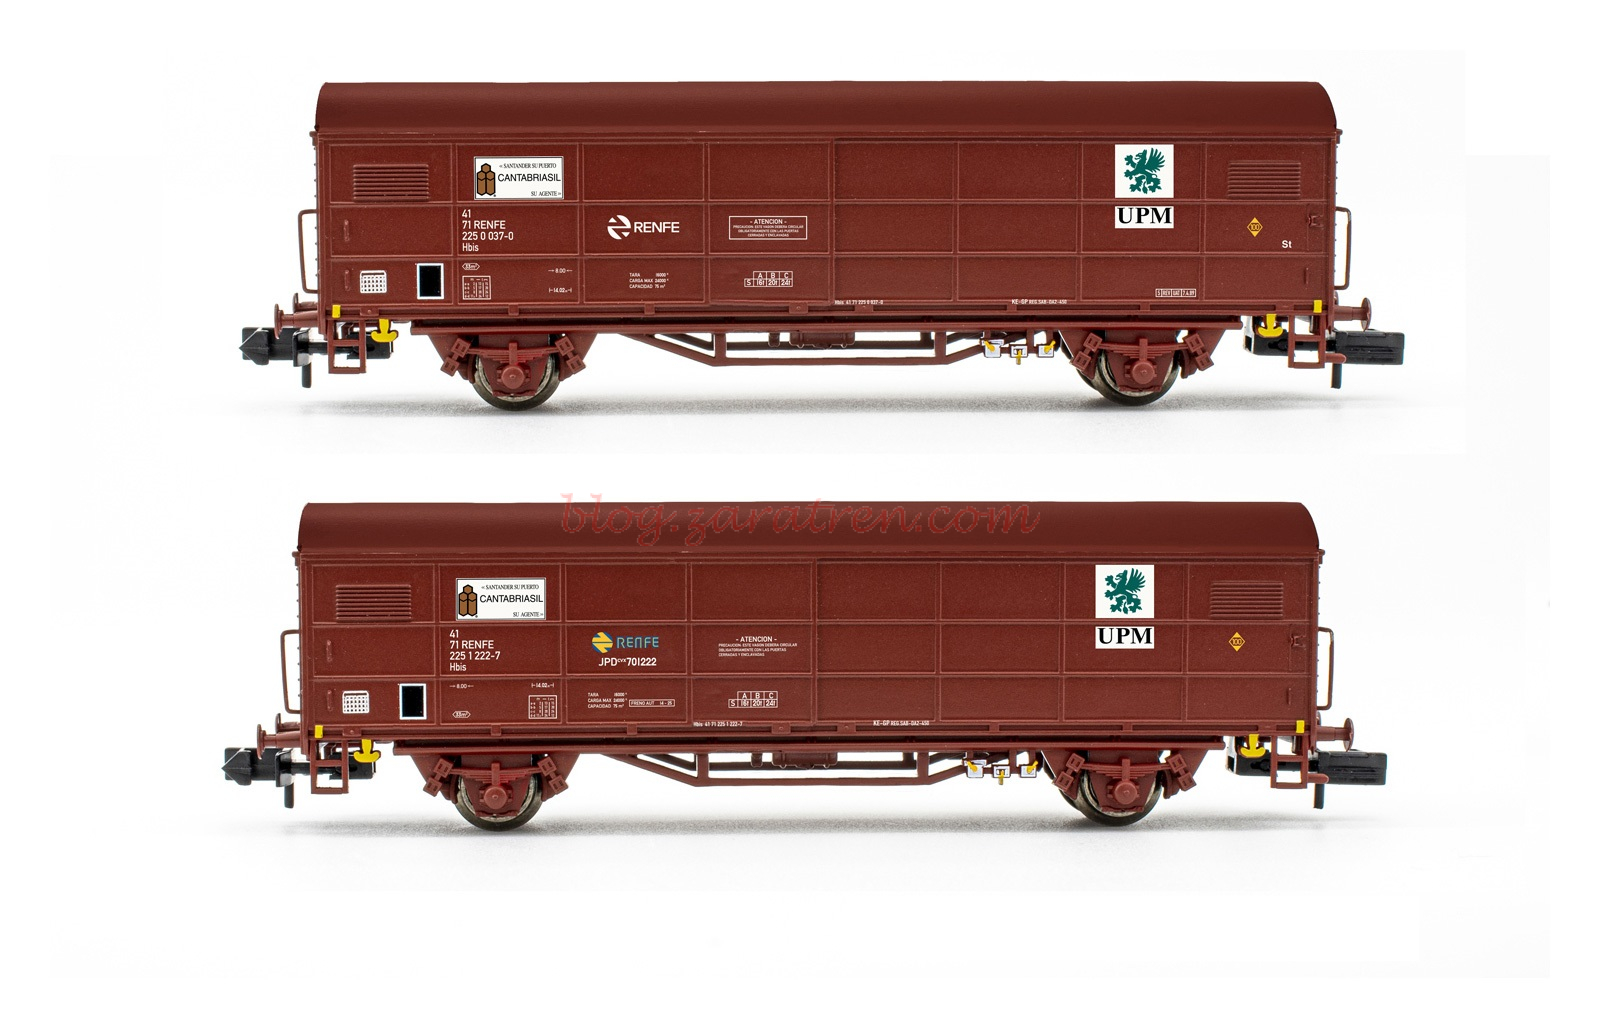 Arnold – Set de dos vagones cerrados JPD, RENFE, Cantabriasil, Epoca IV-V, Escala N, Ref: HN6578.